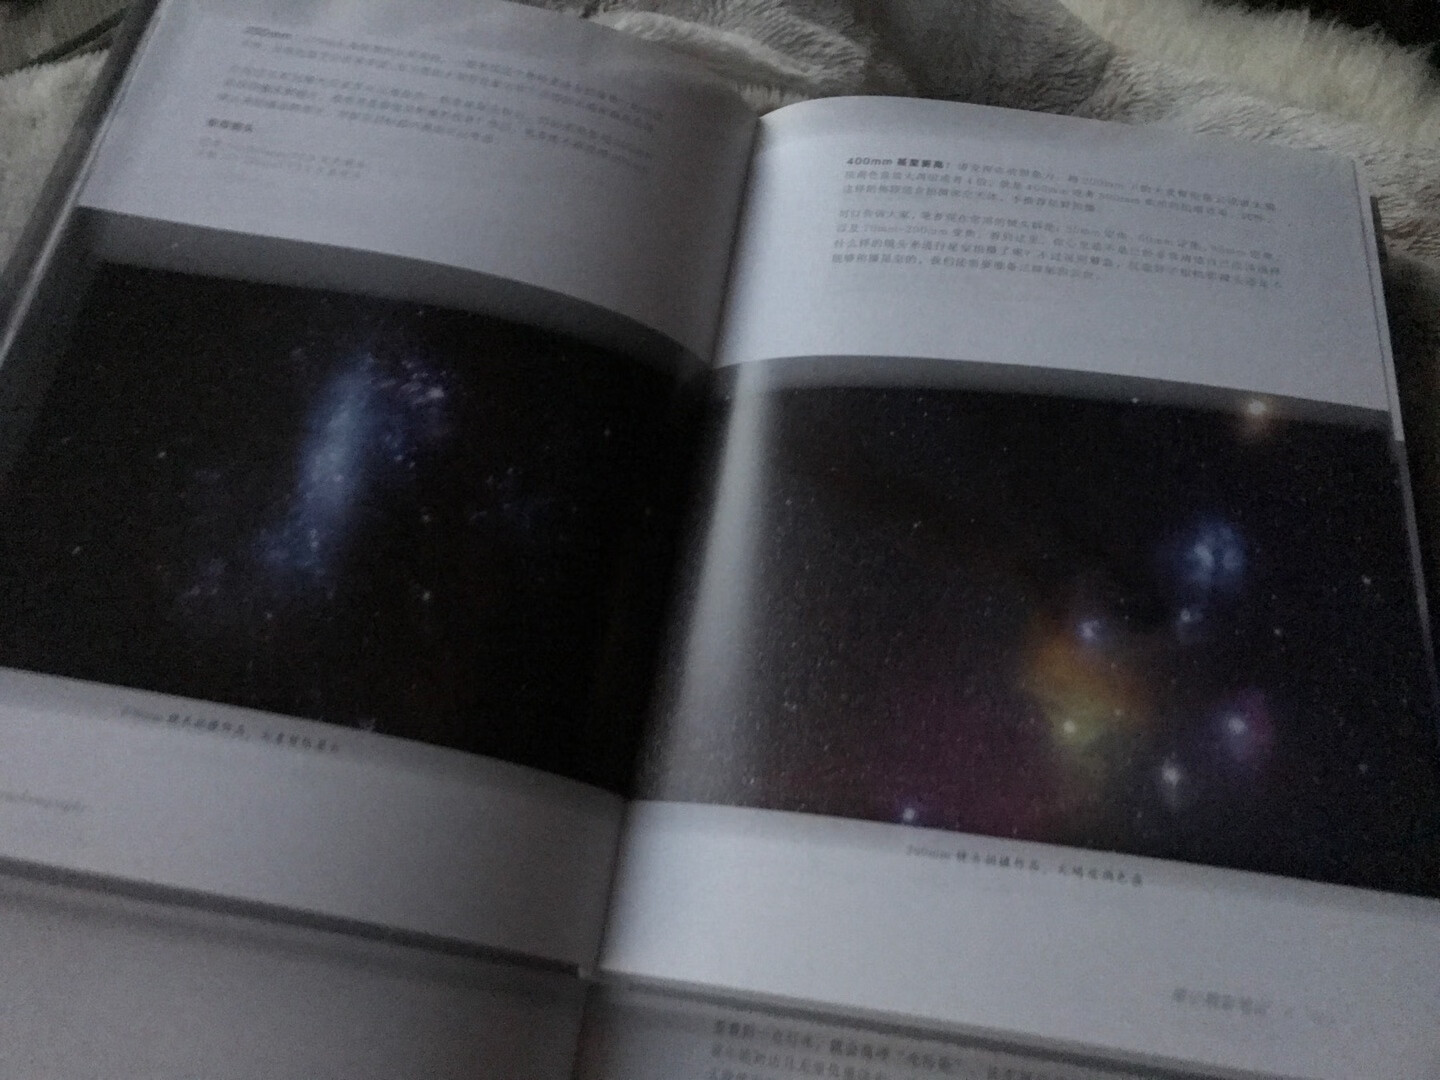 自从在加斯珀国家公园看到银河后，瞬间爱上星空摄影，经常来回两百公里去南汇嘴拍星空。原来上海也能看到银河。希望能从这部书上学习更多的星空摄影知识。